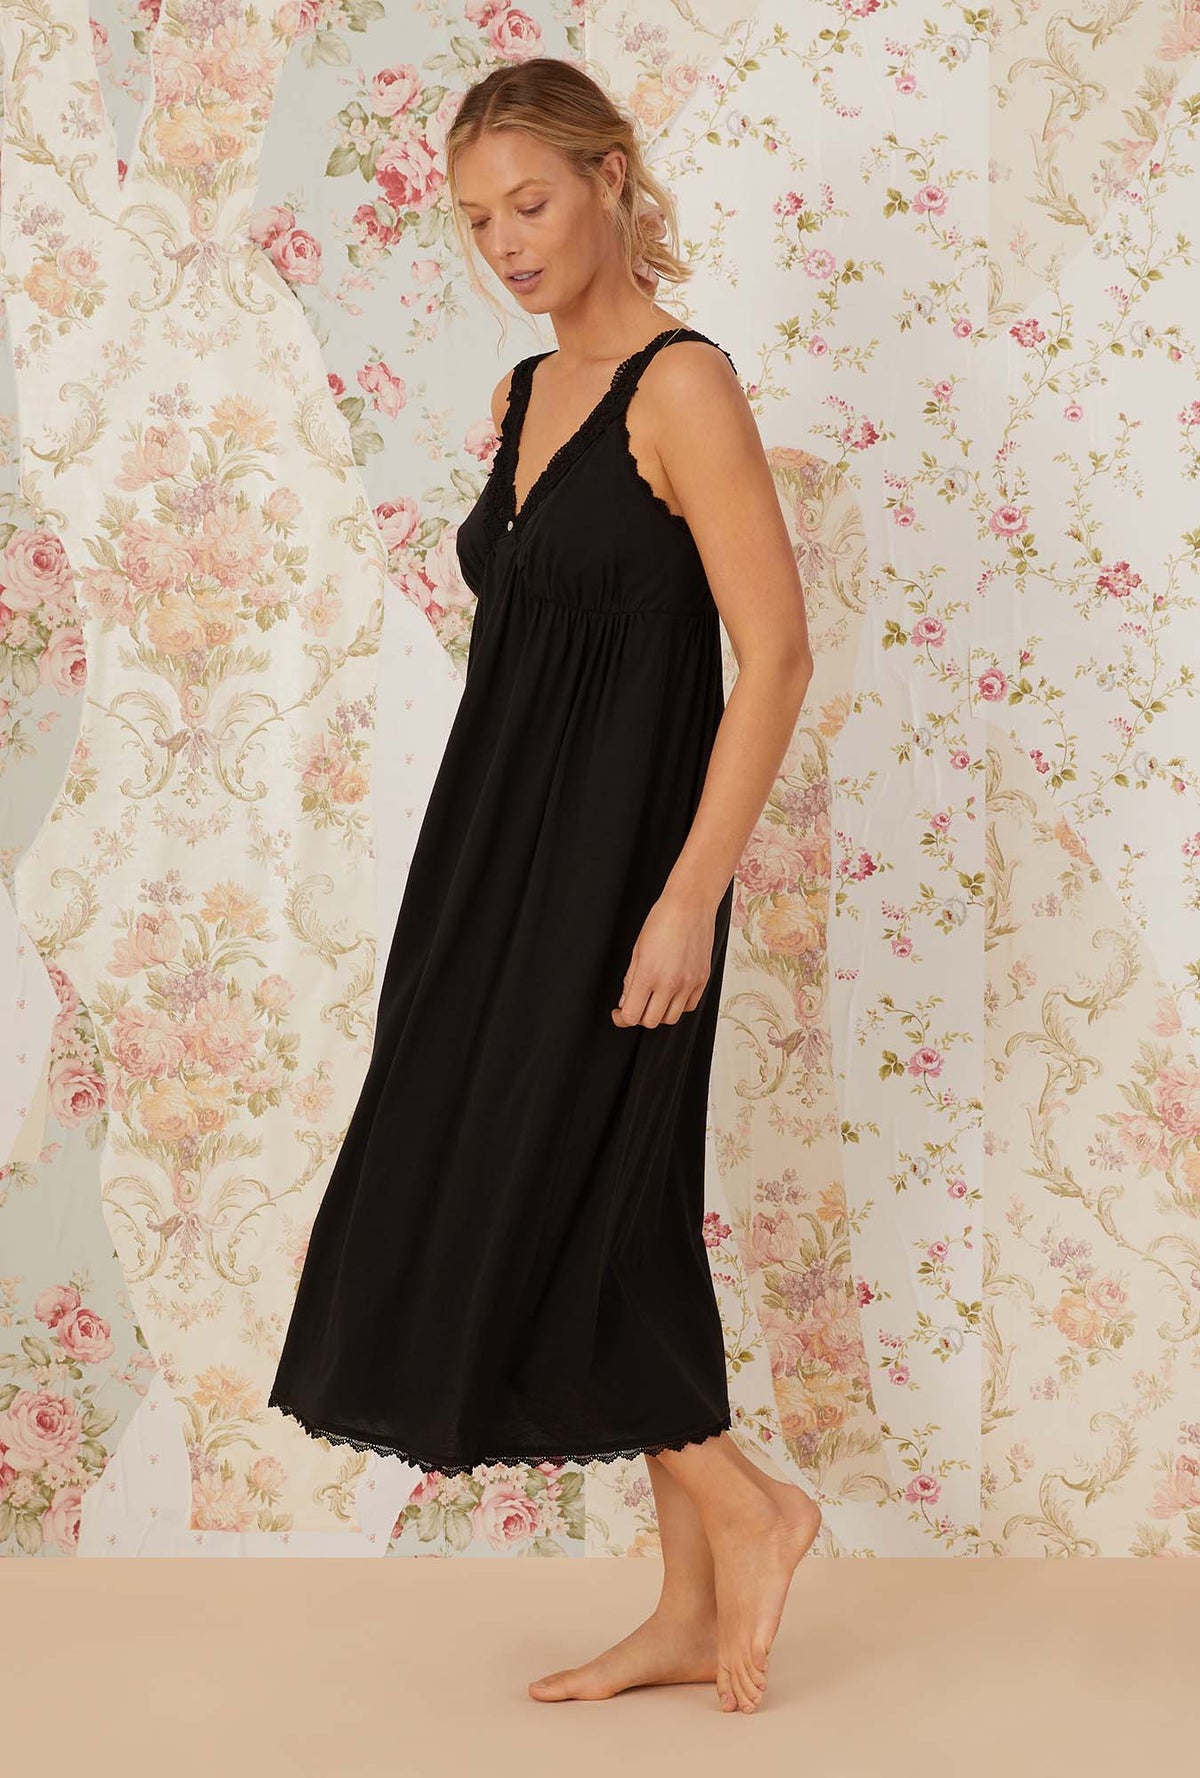 A lady wearing black sleeveless villa blanca knit nightdress.